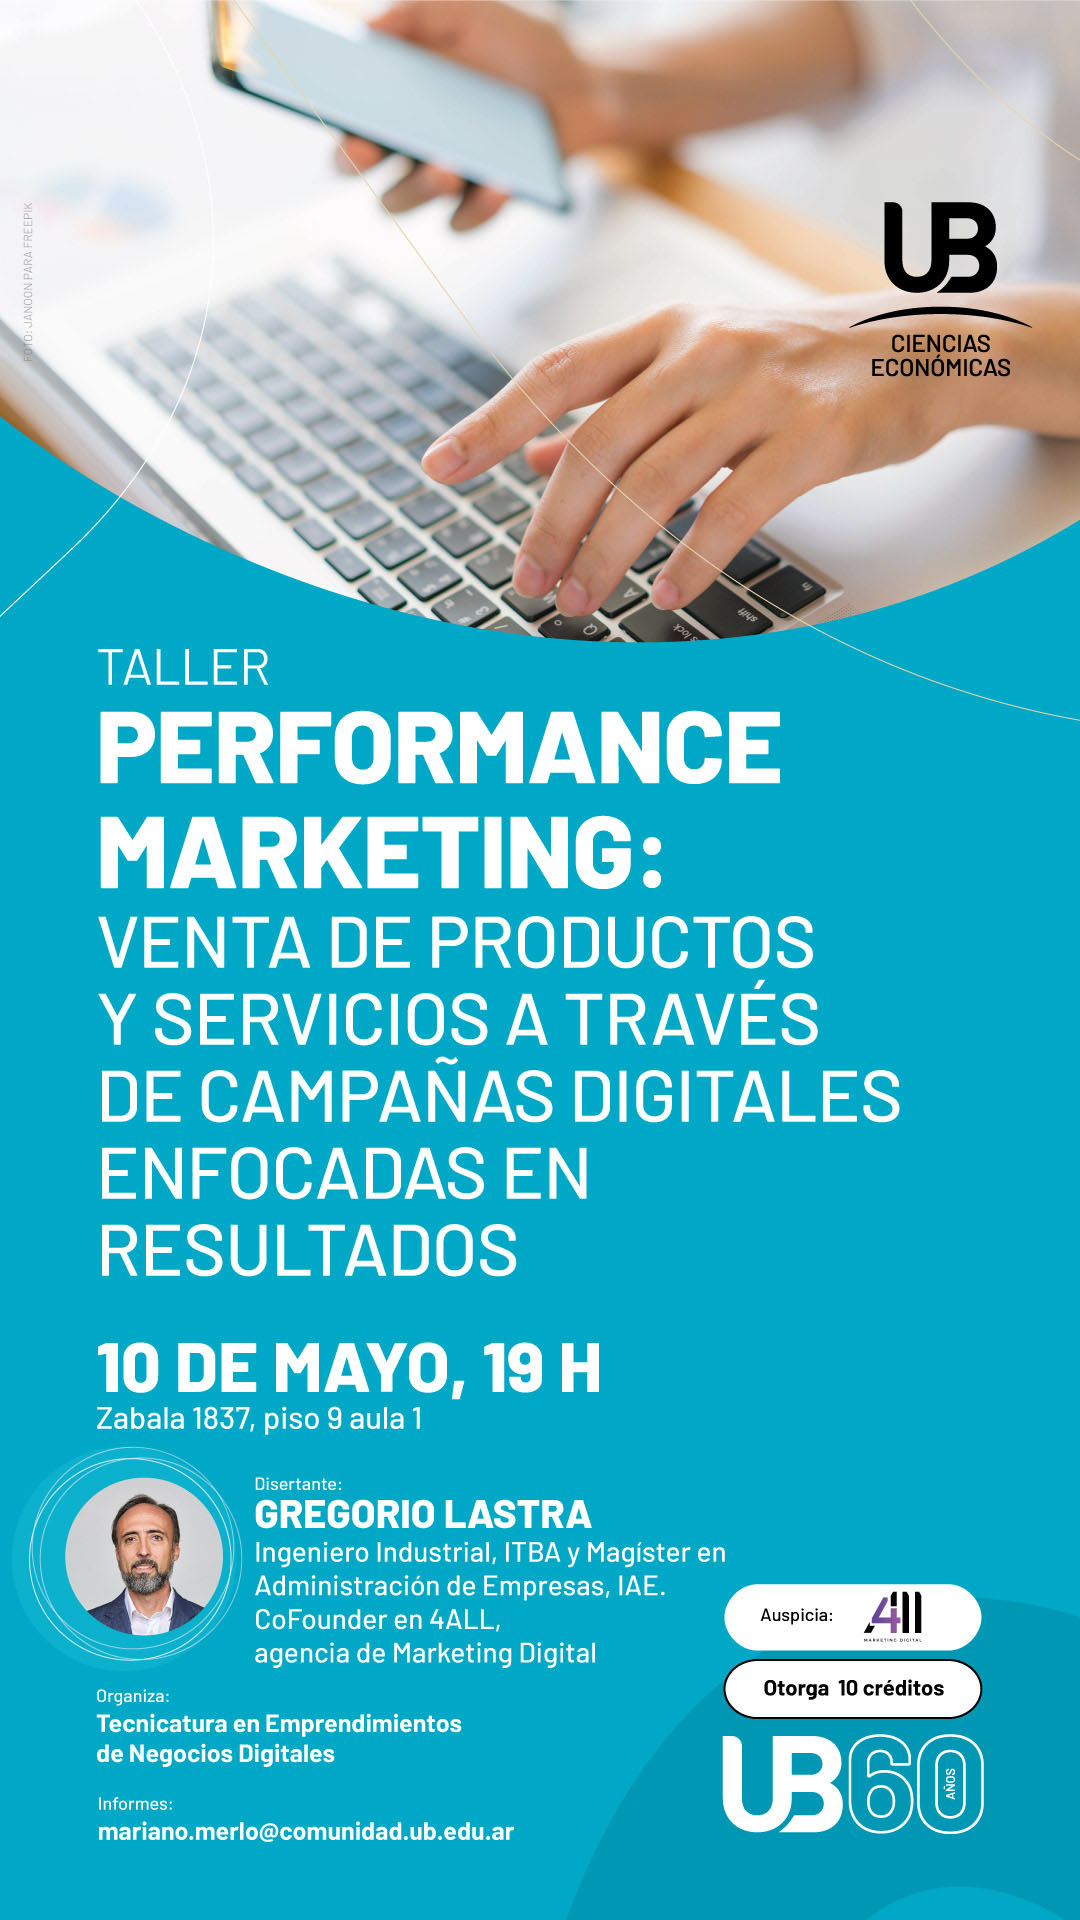 Performance Marketing: venta de productos y servicios a través de campañas digitales enfocadas en resultados